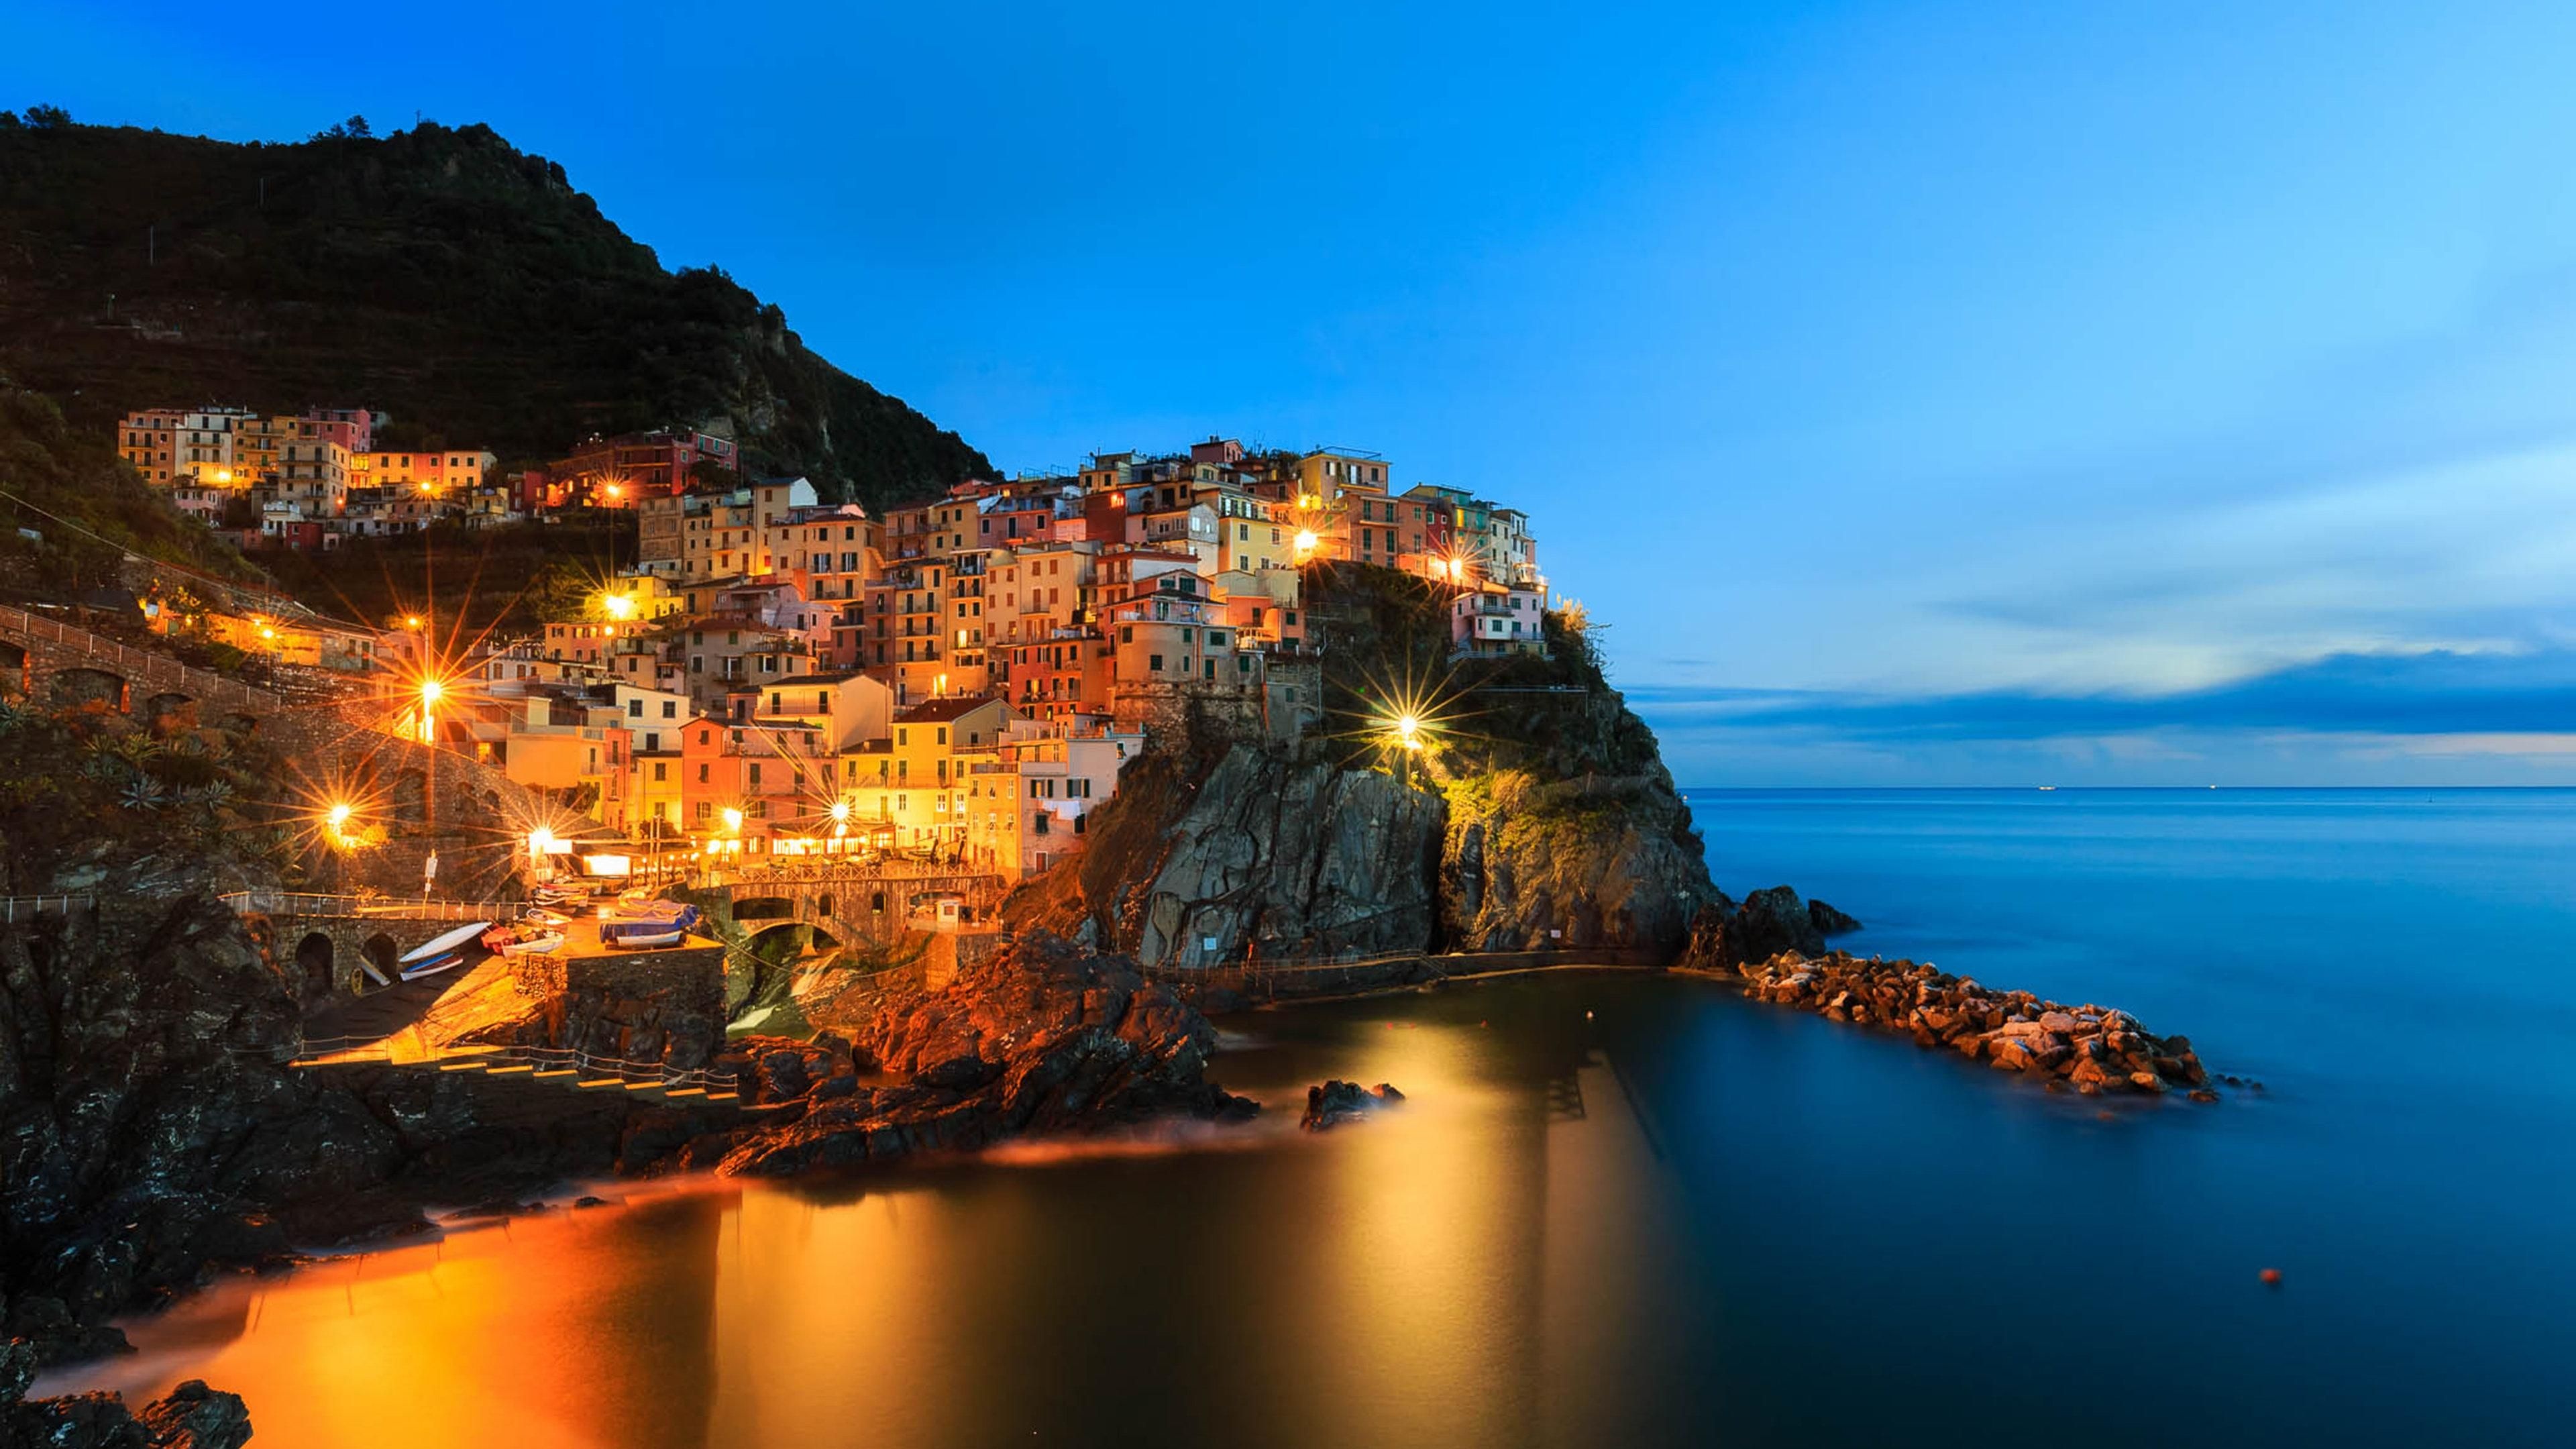 Cinque Terre, Night 4K wallpaper, Desktop background, 3840x2160 4K Desktop